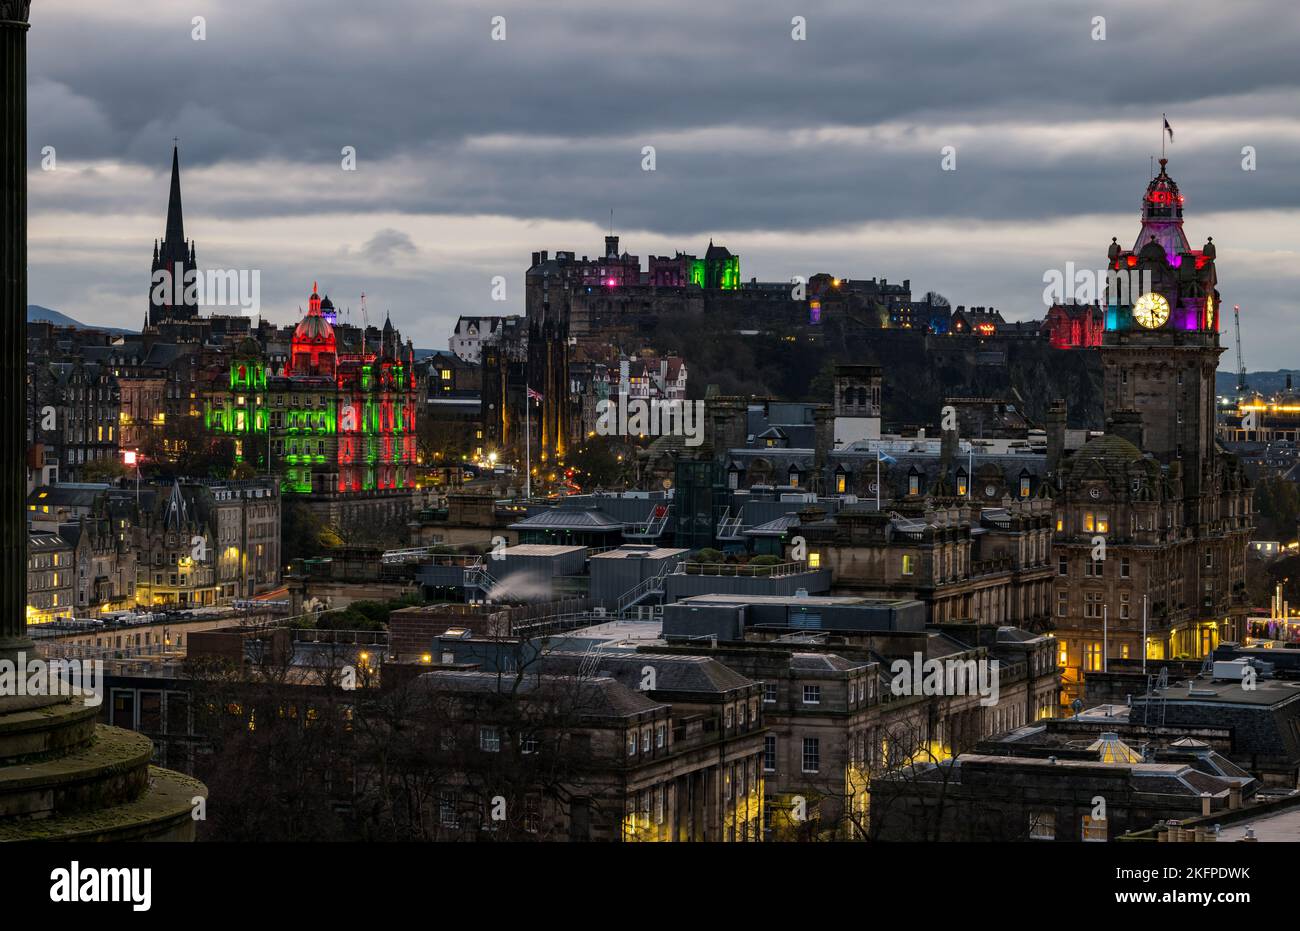 Le château d'Édimbourg, le siège de la banque HBOS et la tour de l'horloge de l'hôtel Balmoral s'illuminent au crépuscule, en Écosse, au Royaume-Uni Banque D'Images